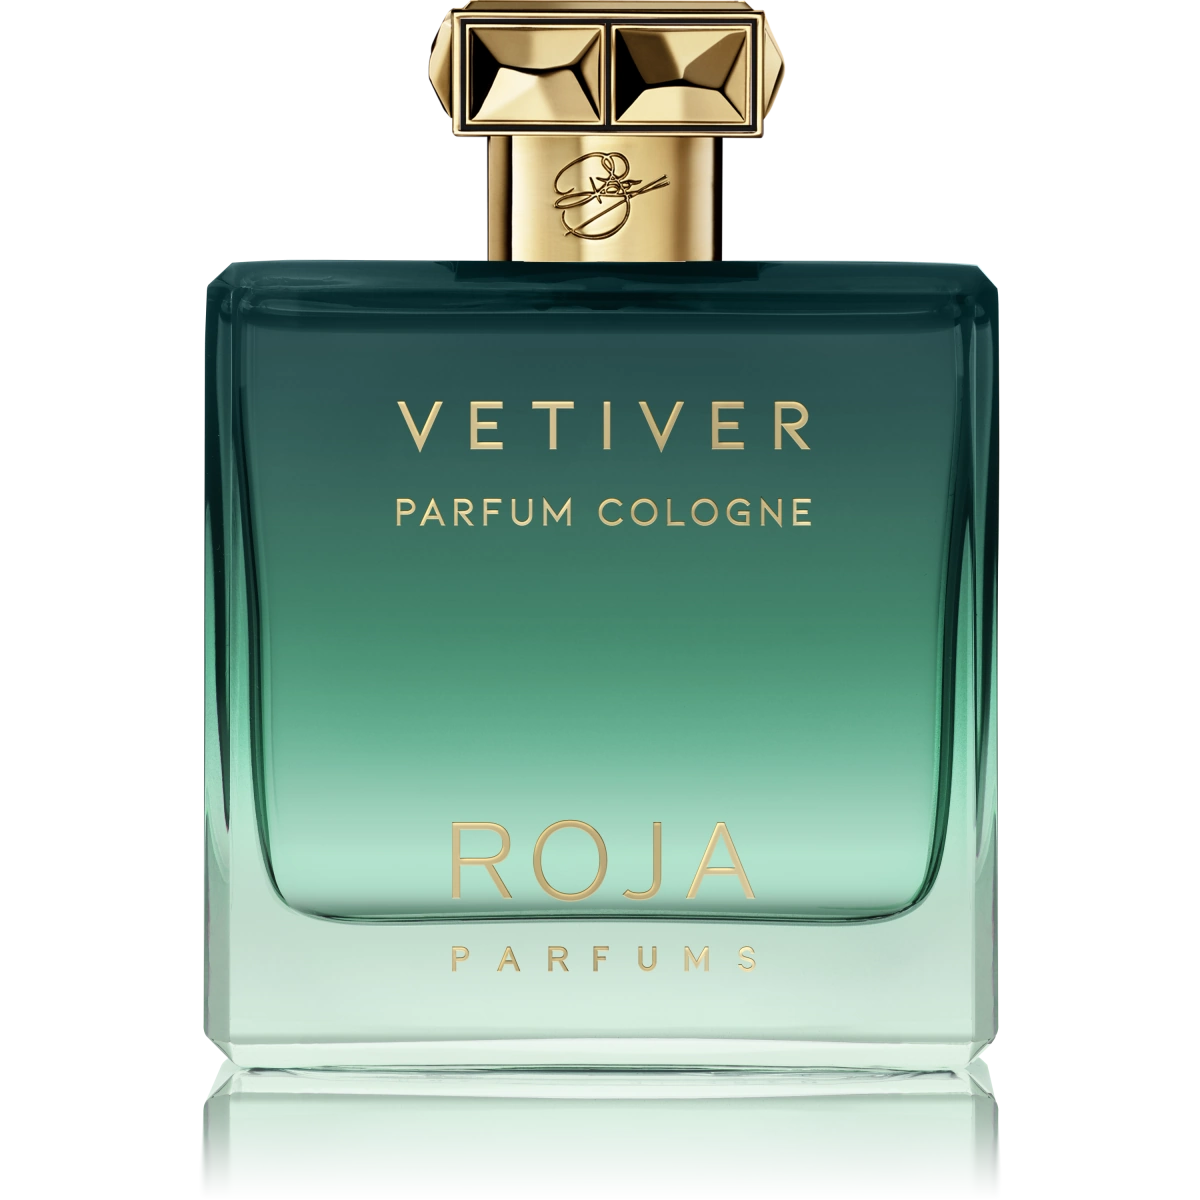 vetiver-pour-homme-parfum-cologne-roja.webp